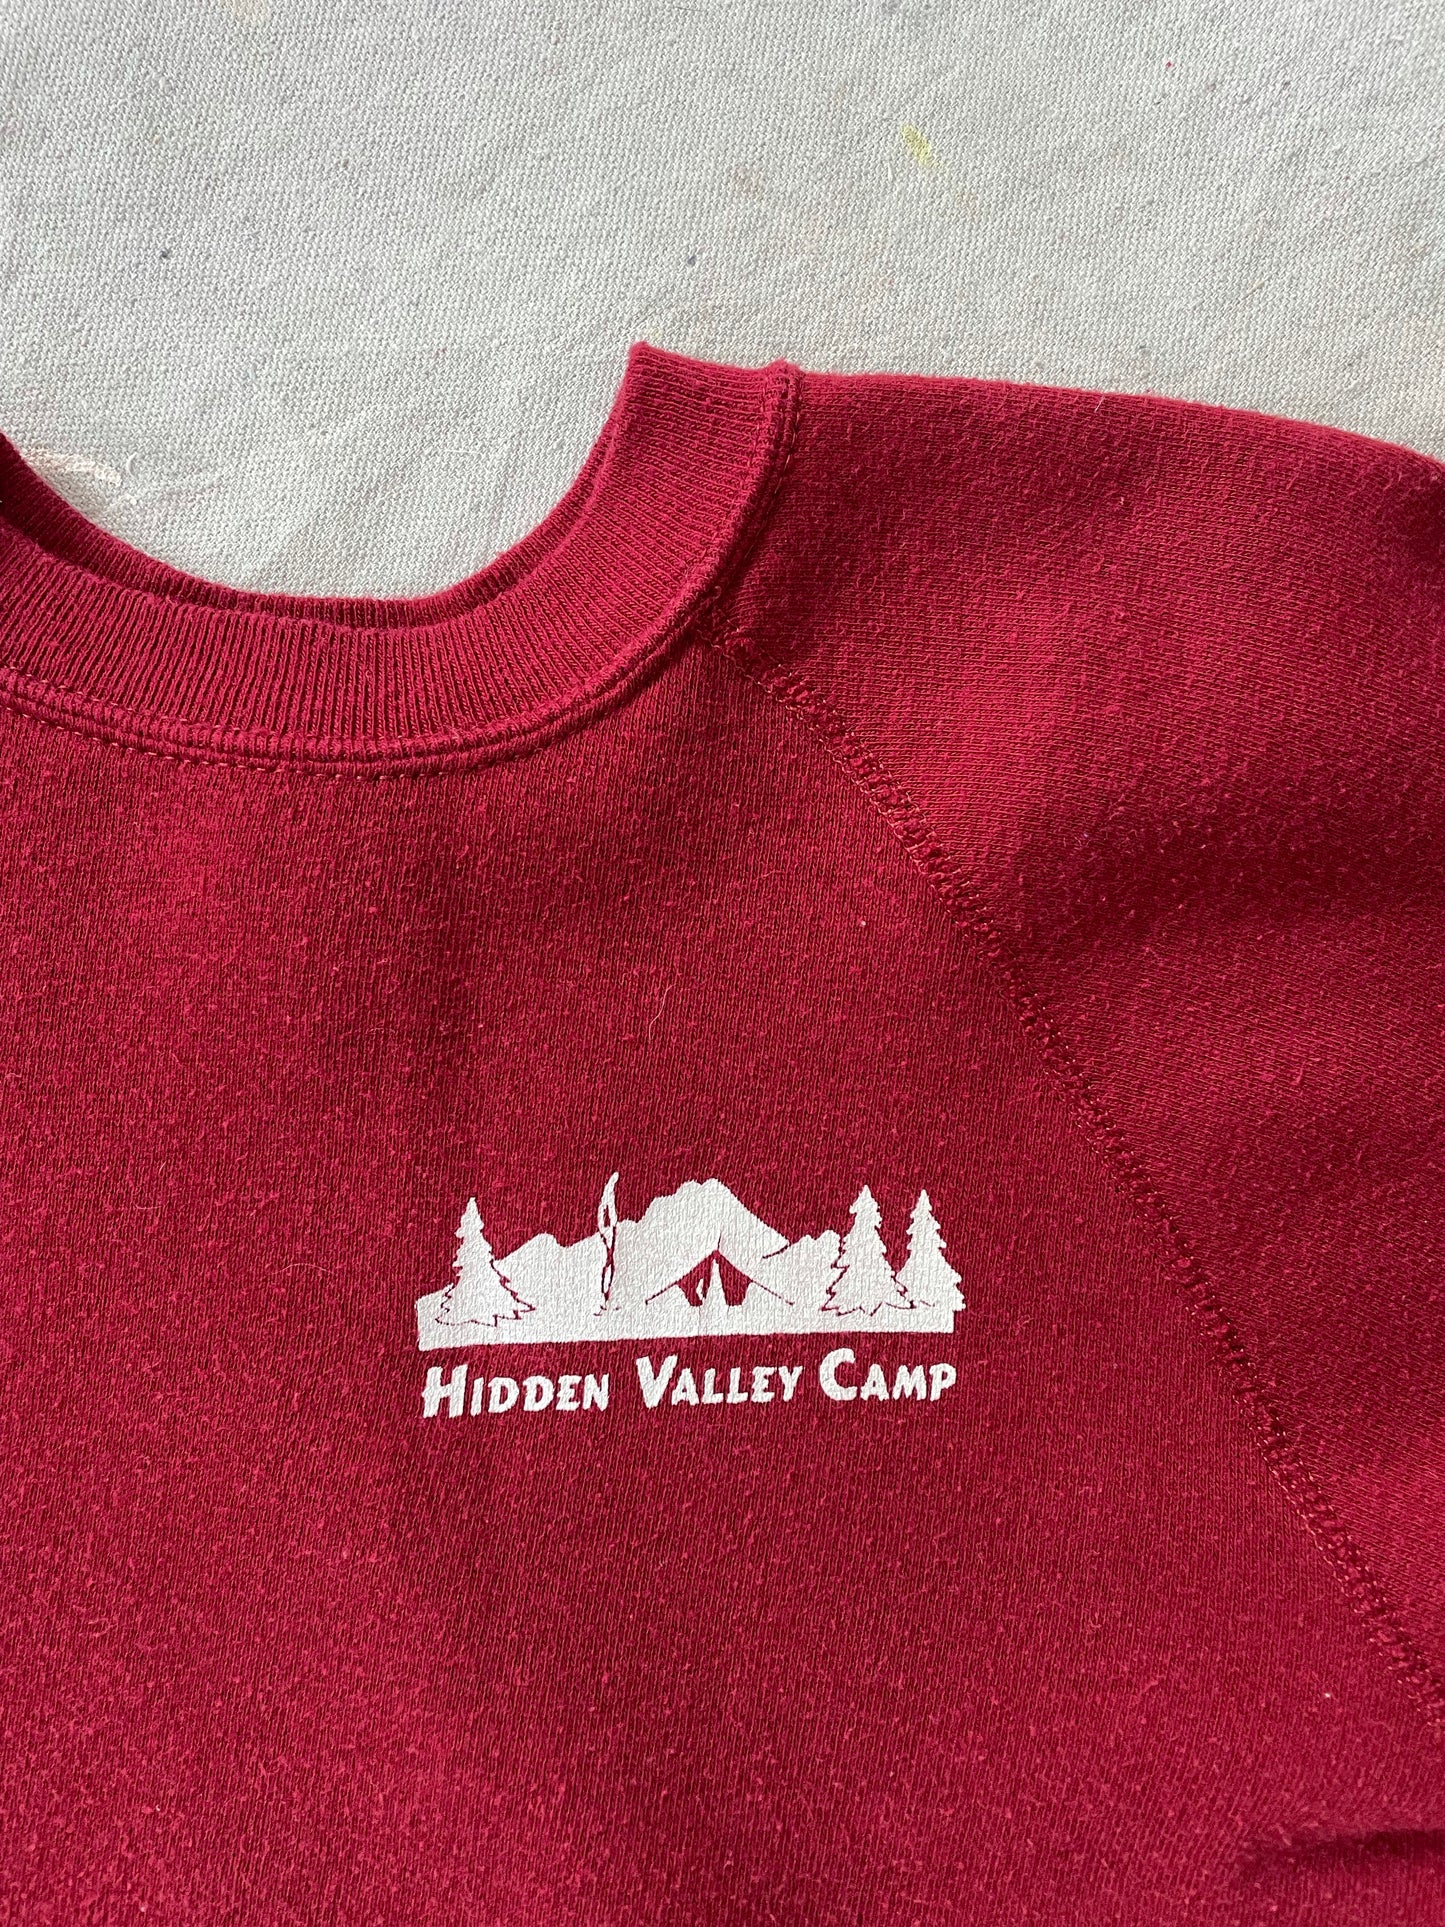 Hidden Valley Camp Sweatshirt